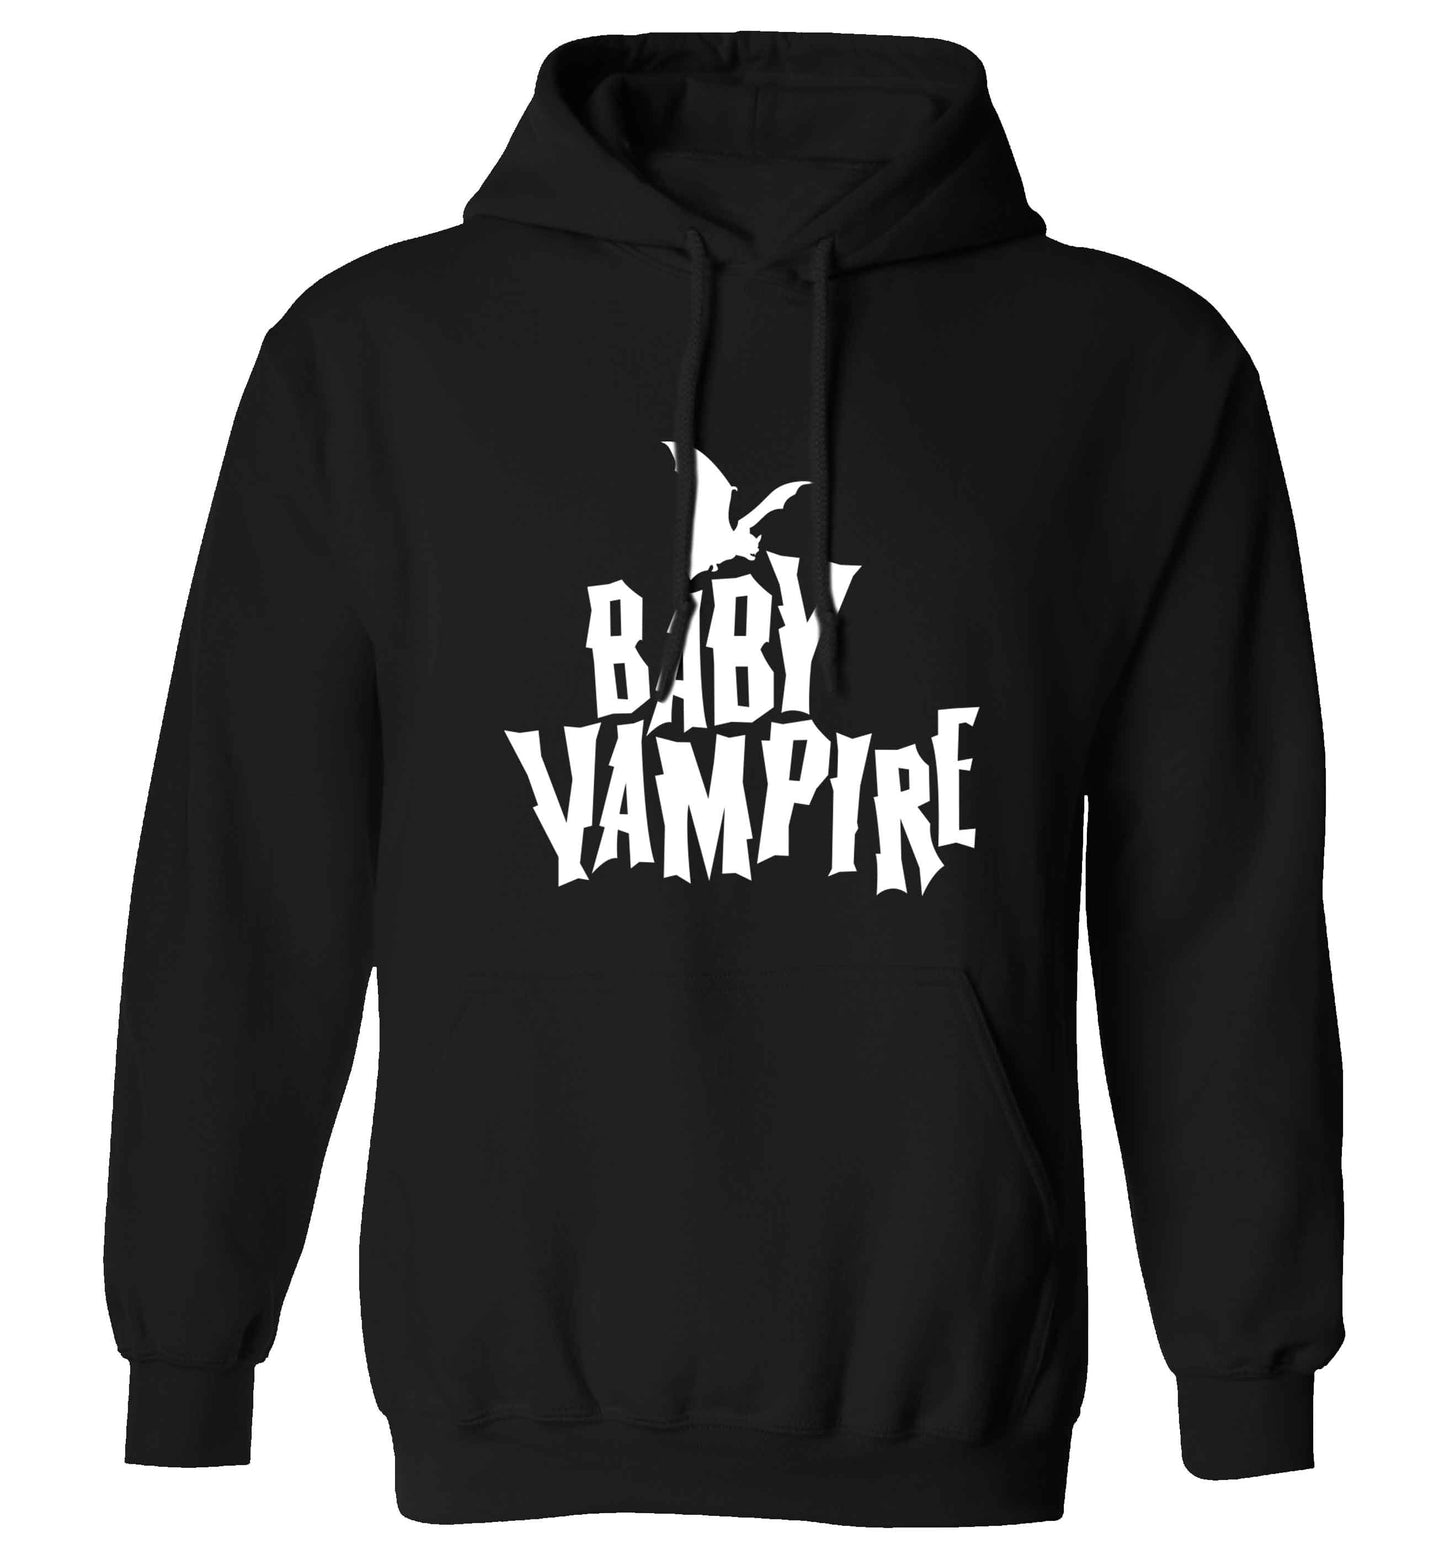 Baby vampire adults unisex black hoodie 2XL